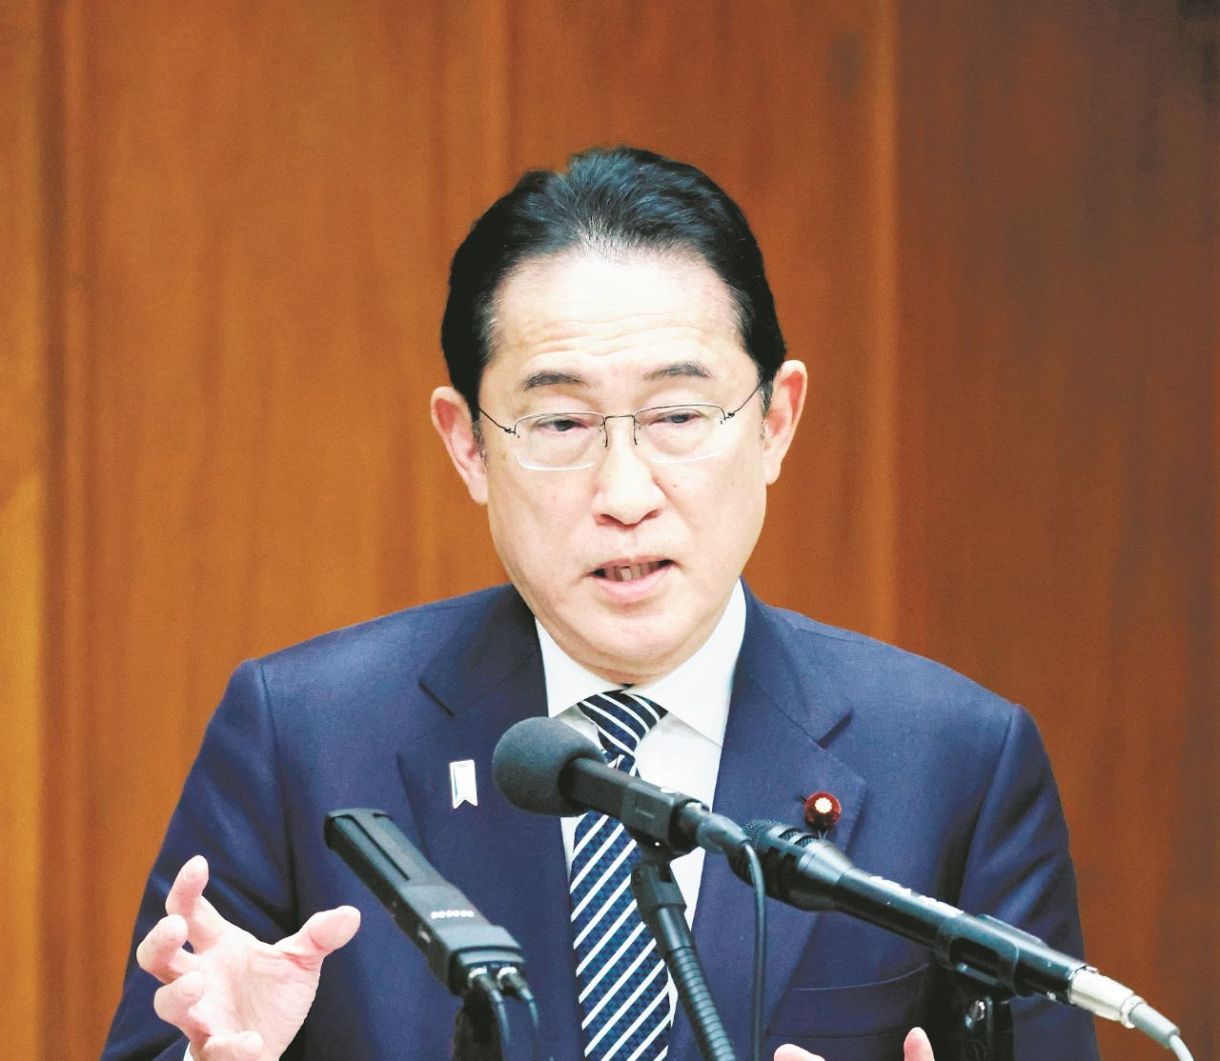 衆院政治倫理審査会で答弁する岸田首相(代表撮影)